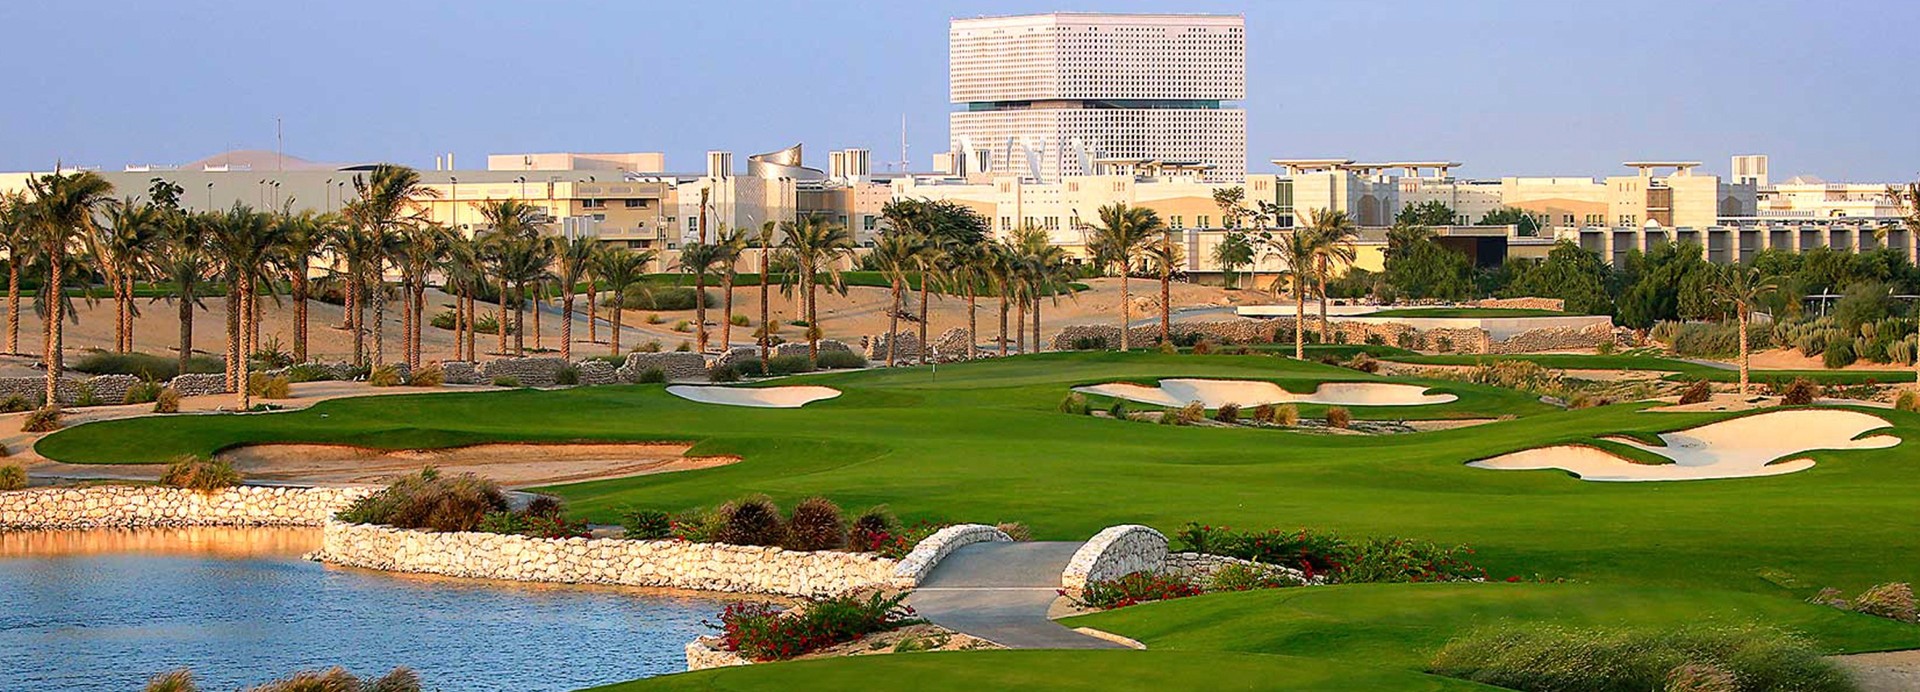 Education City Golf Club  | Golfové zájezdy, golfová dovolená, luxusní golf